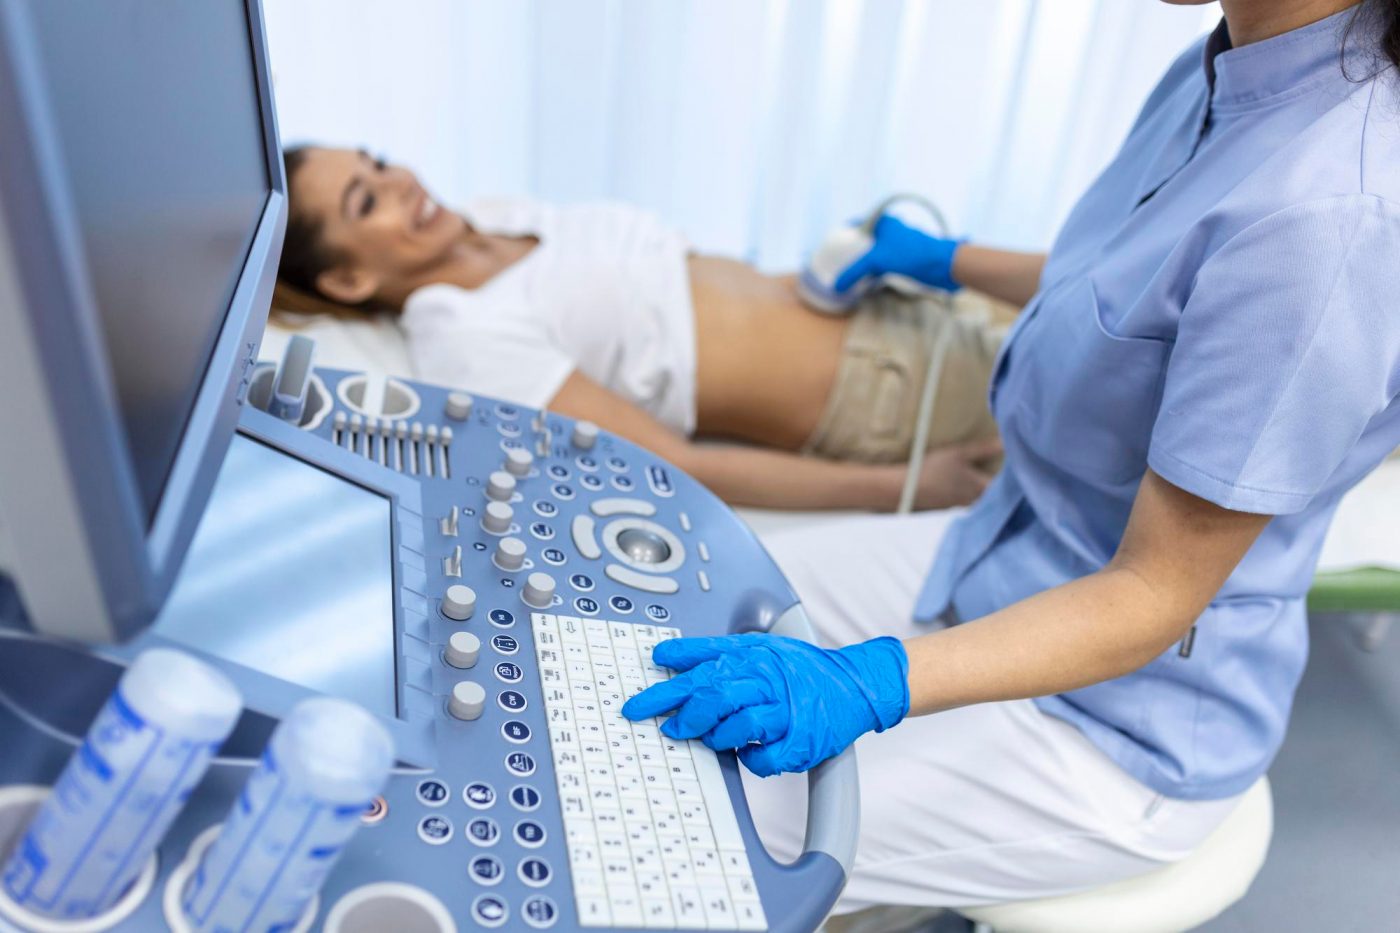 diagnostico-ultrasonido-estomago-abdomen-mujer-vista-primer-plano-clinica-medico-ejecuta-sensor-ultrasonido-sobre-barriga-nina-paciente-mira-imagen-pantalla-diagnostico-organos-internos